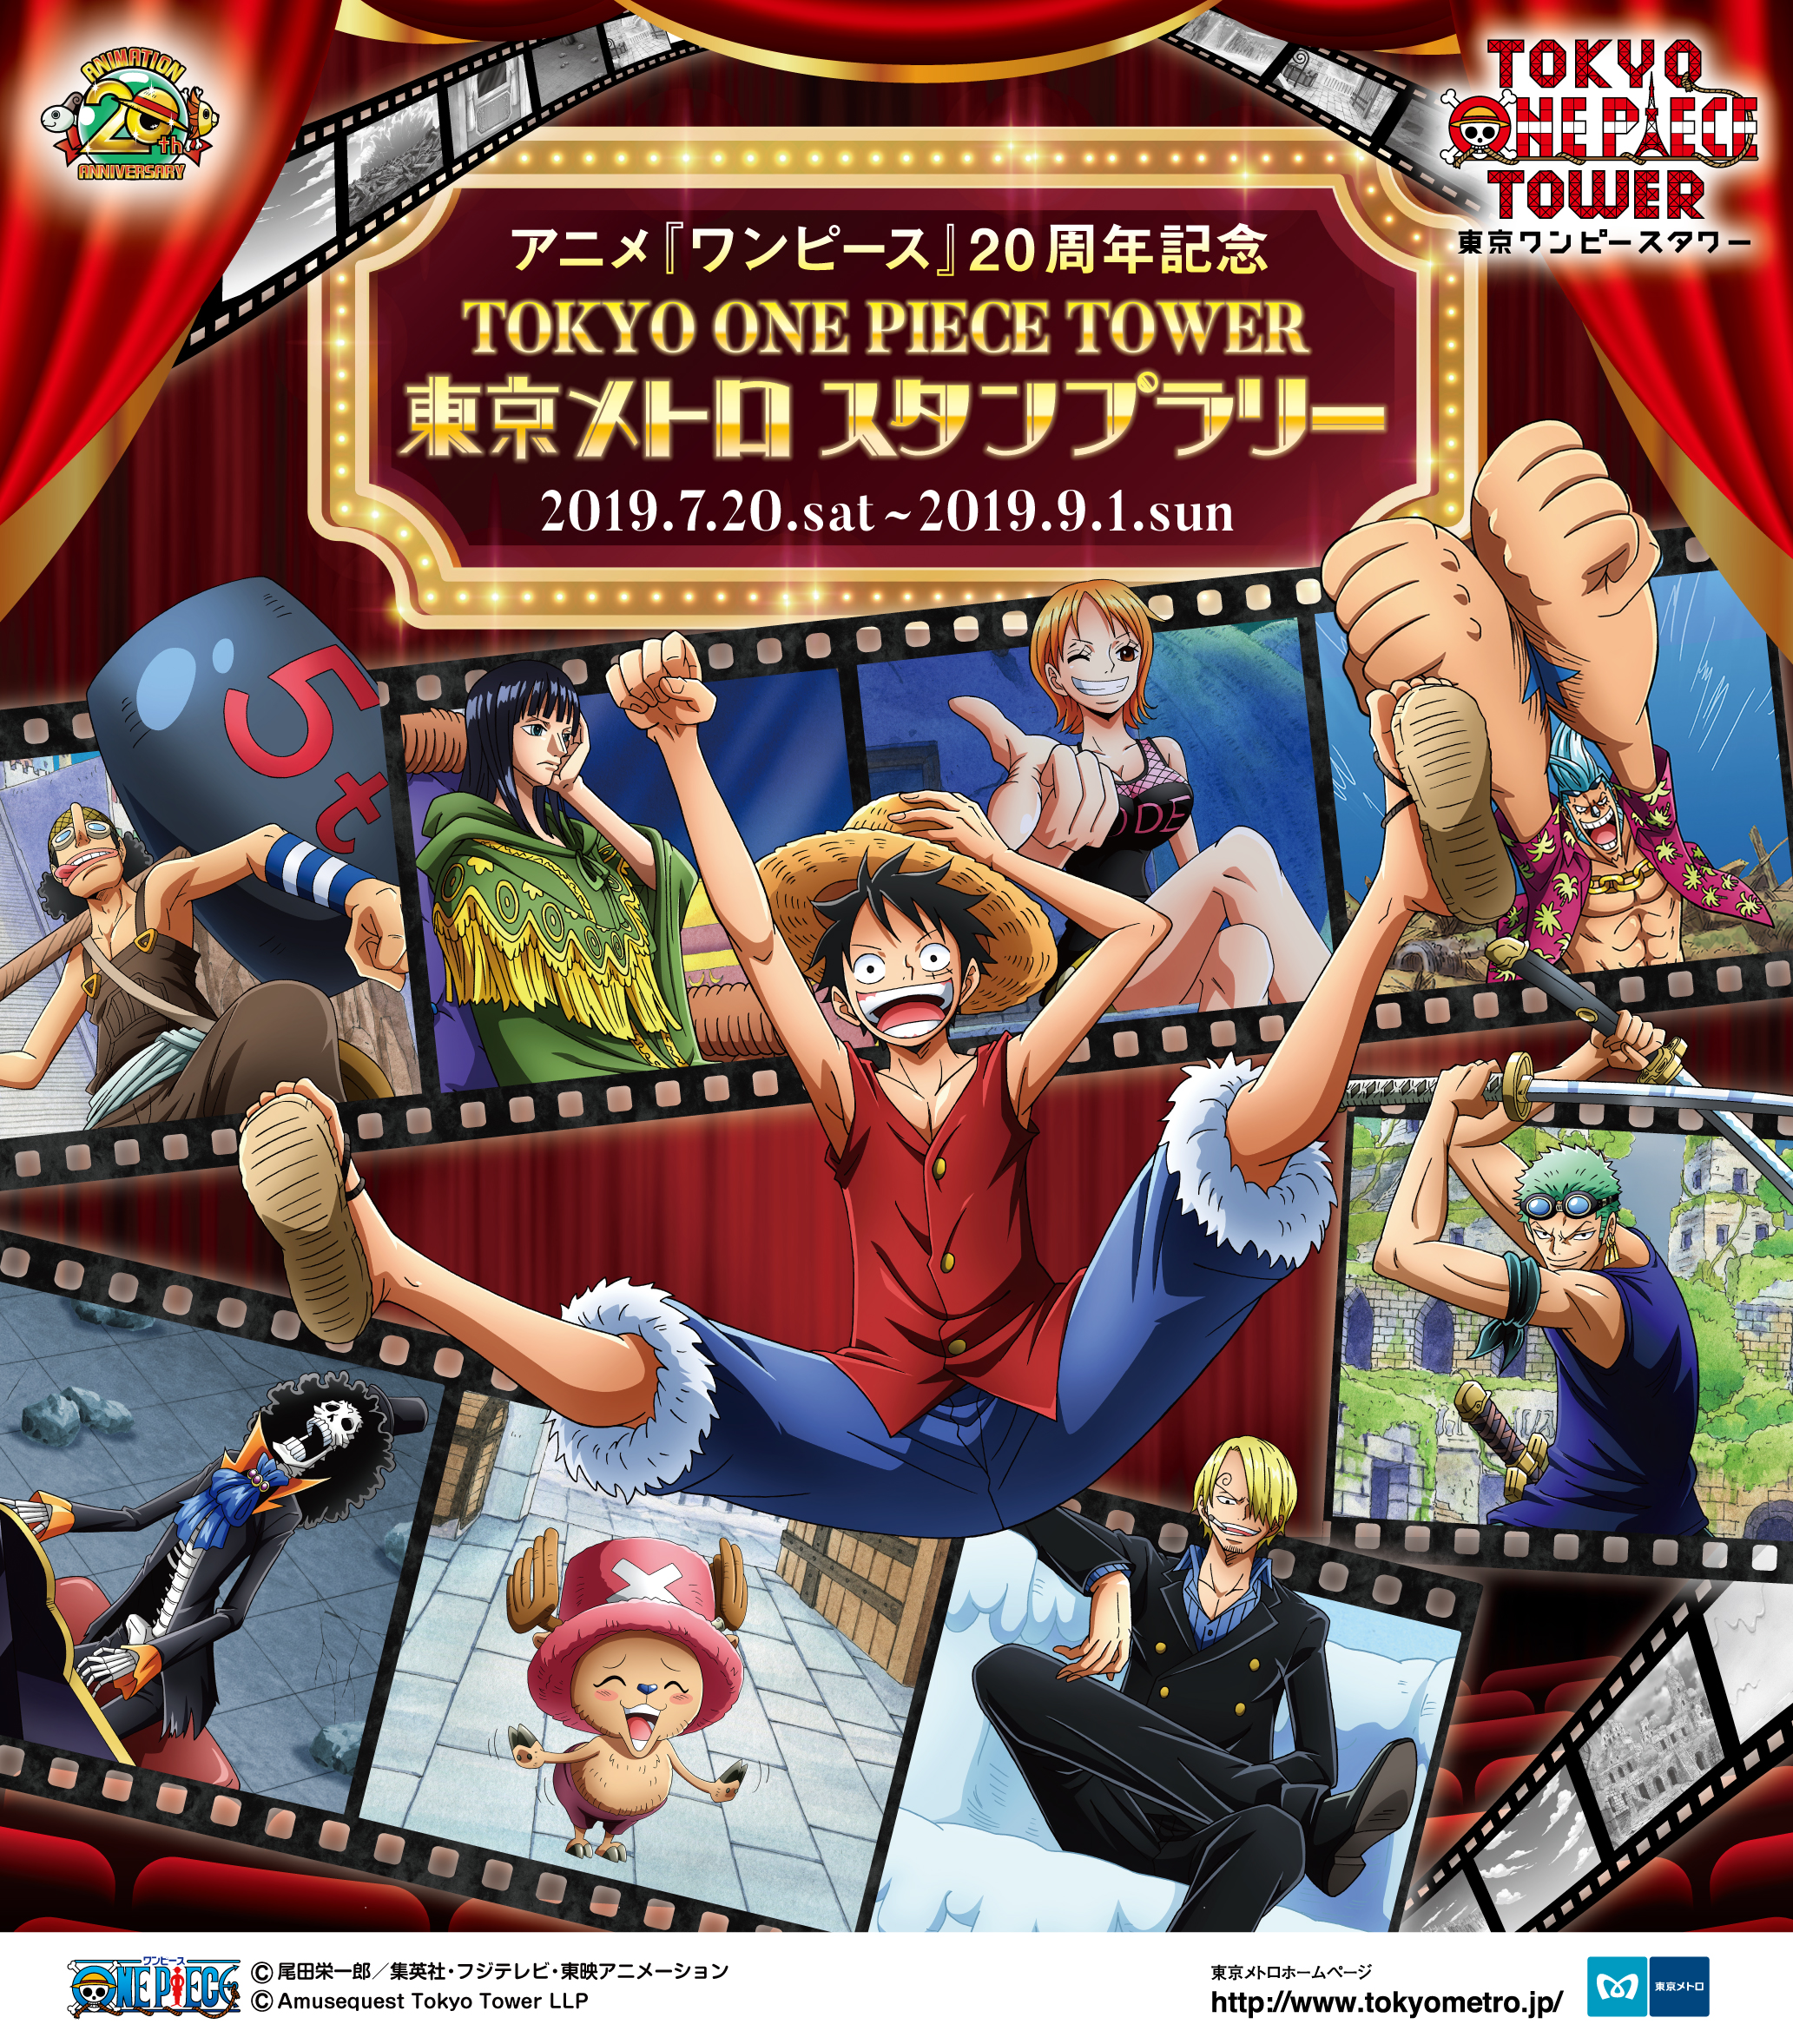 7月日 土 よりアニメ ワンピース 周年記念 Tokyo One Piece Tower 東京メトロ スタンプラリー 開催 東京ワンピース タワーのプレスリリース